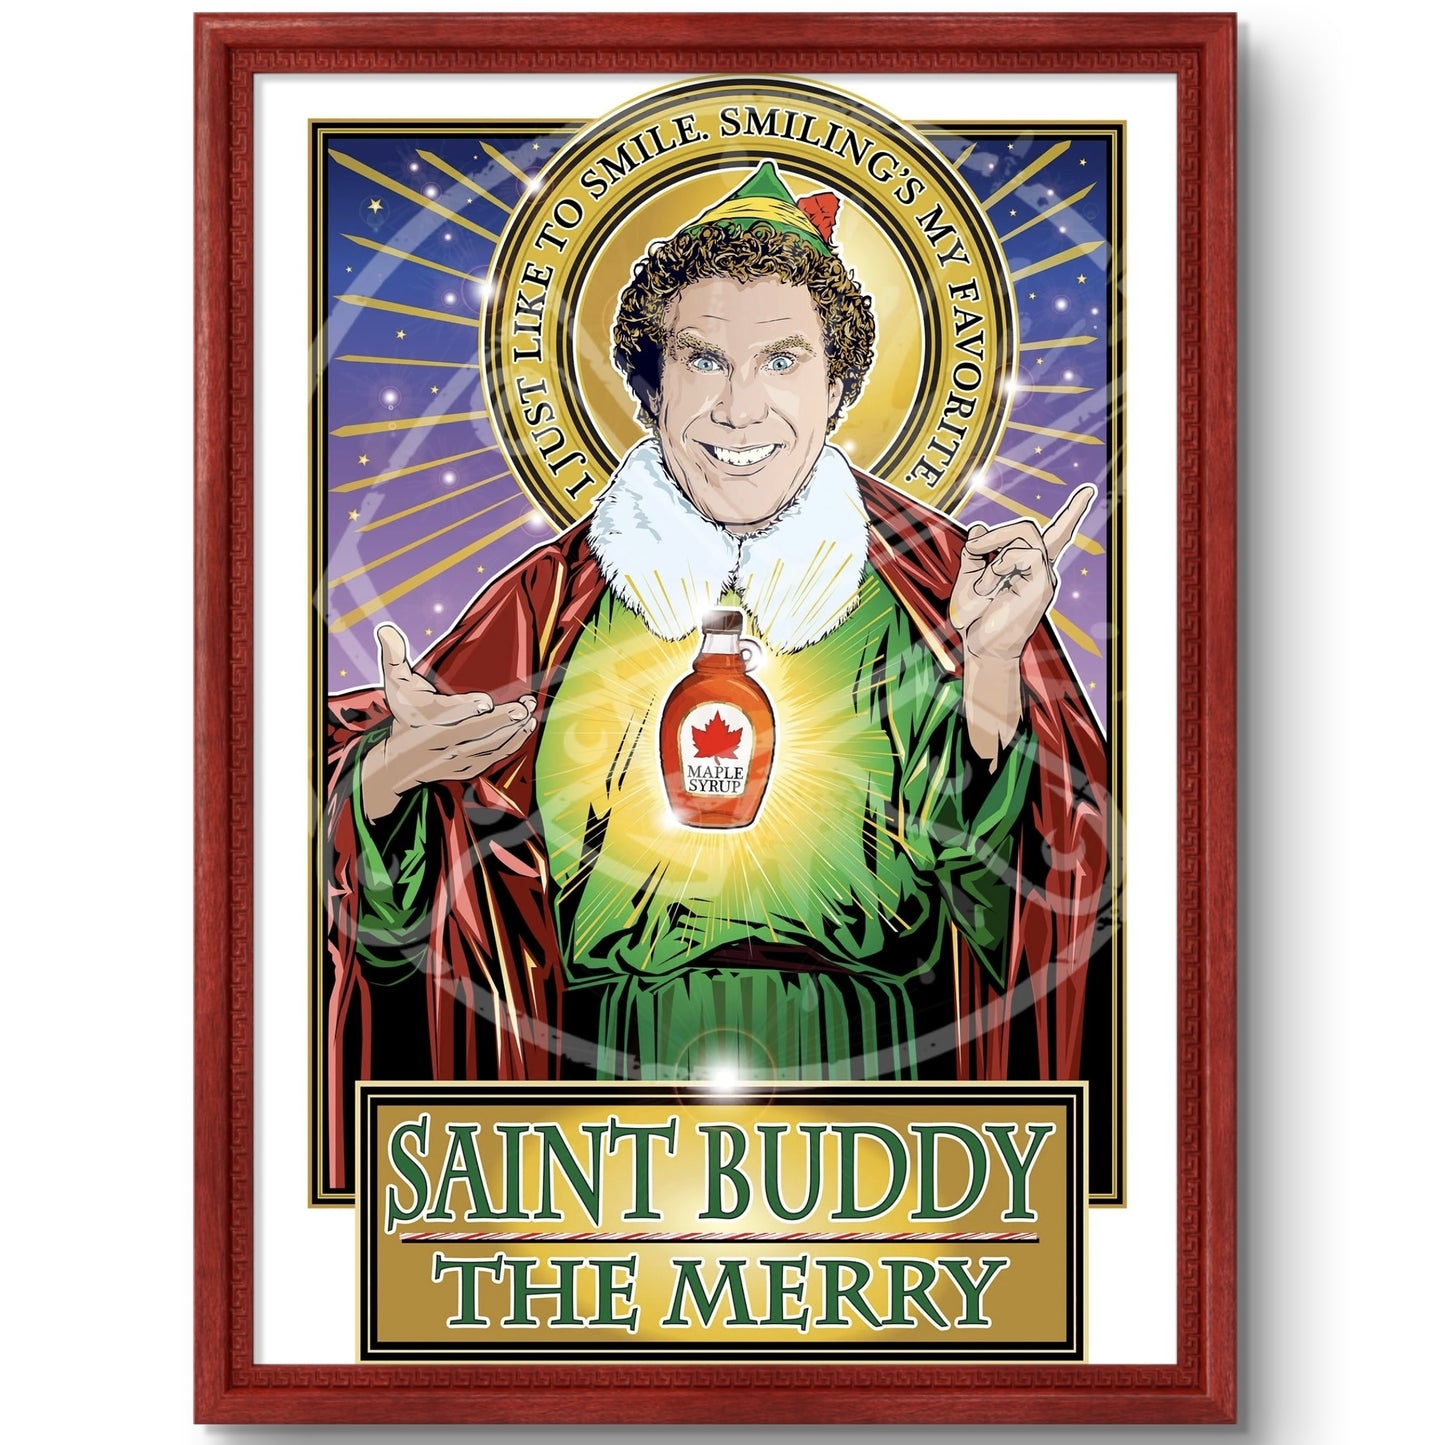 Saint Buddy The Merry Poster Cleaverandblade.com